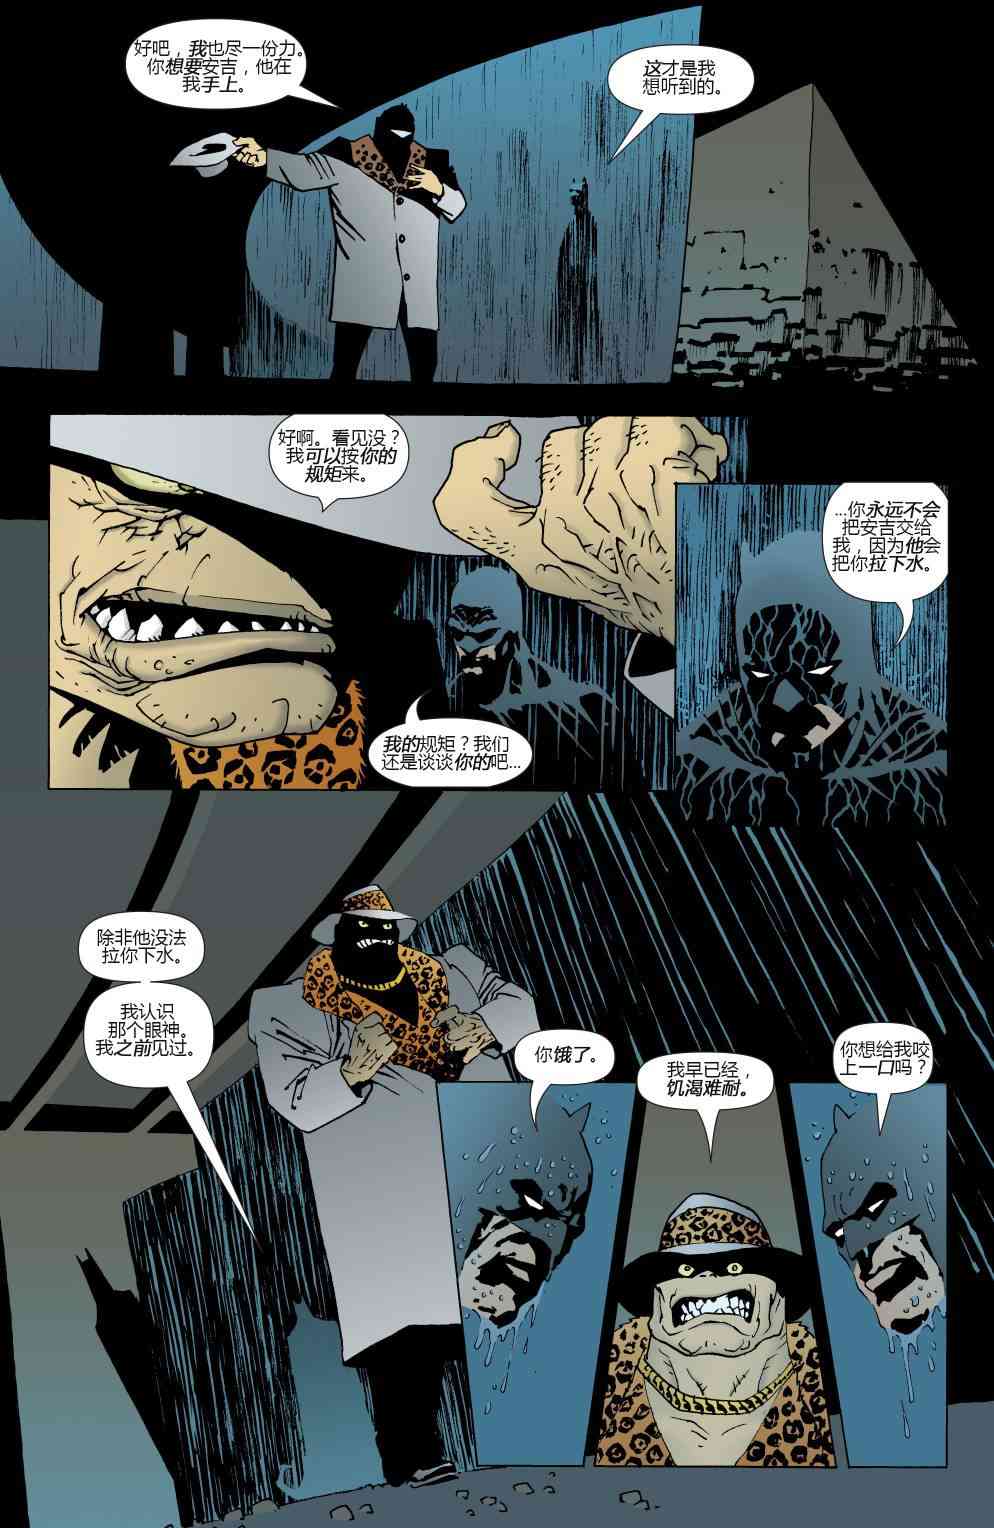 蝙蝠侠 - 第623卷破碎城市#4 - 2